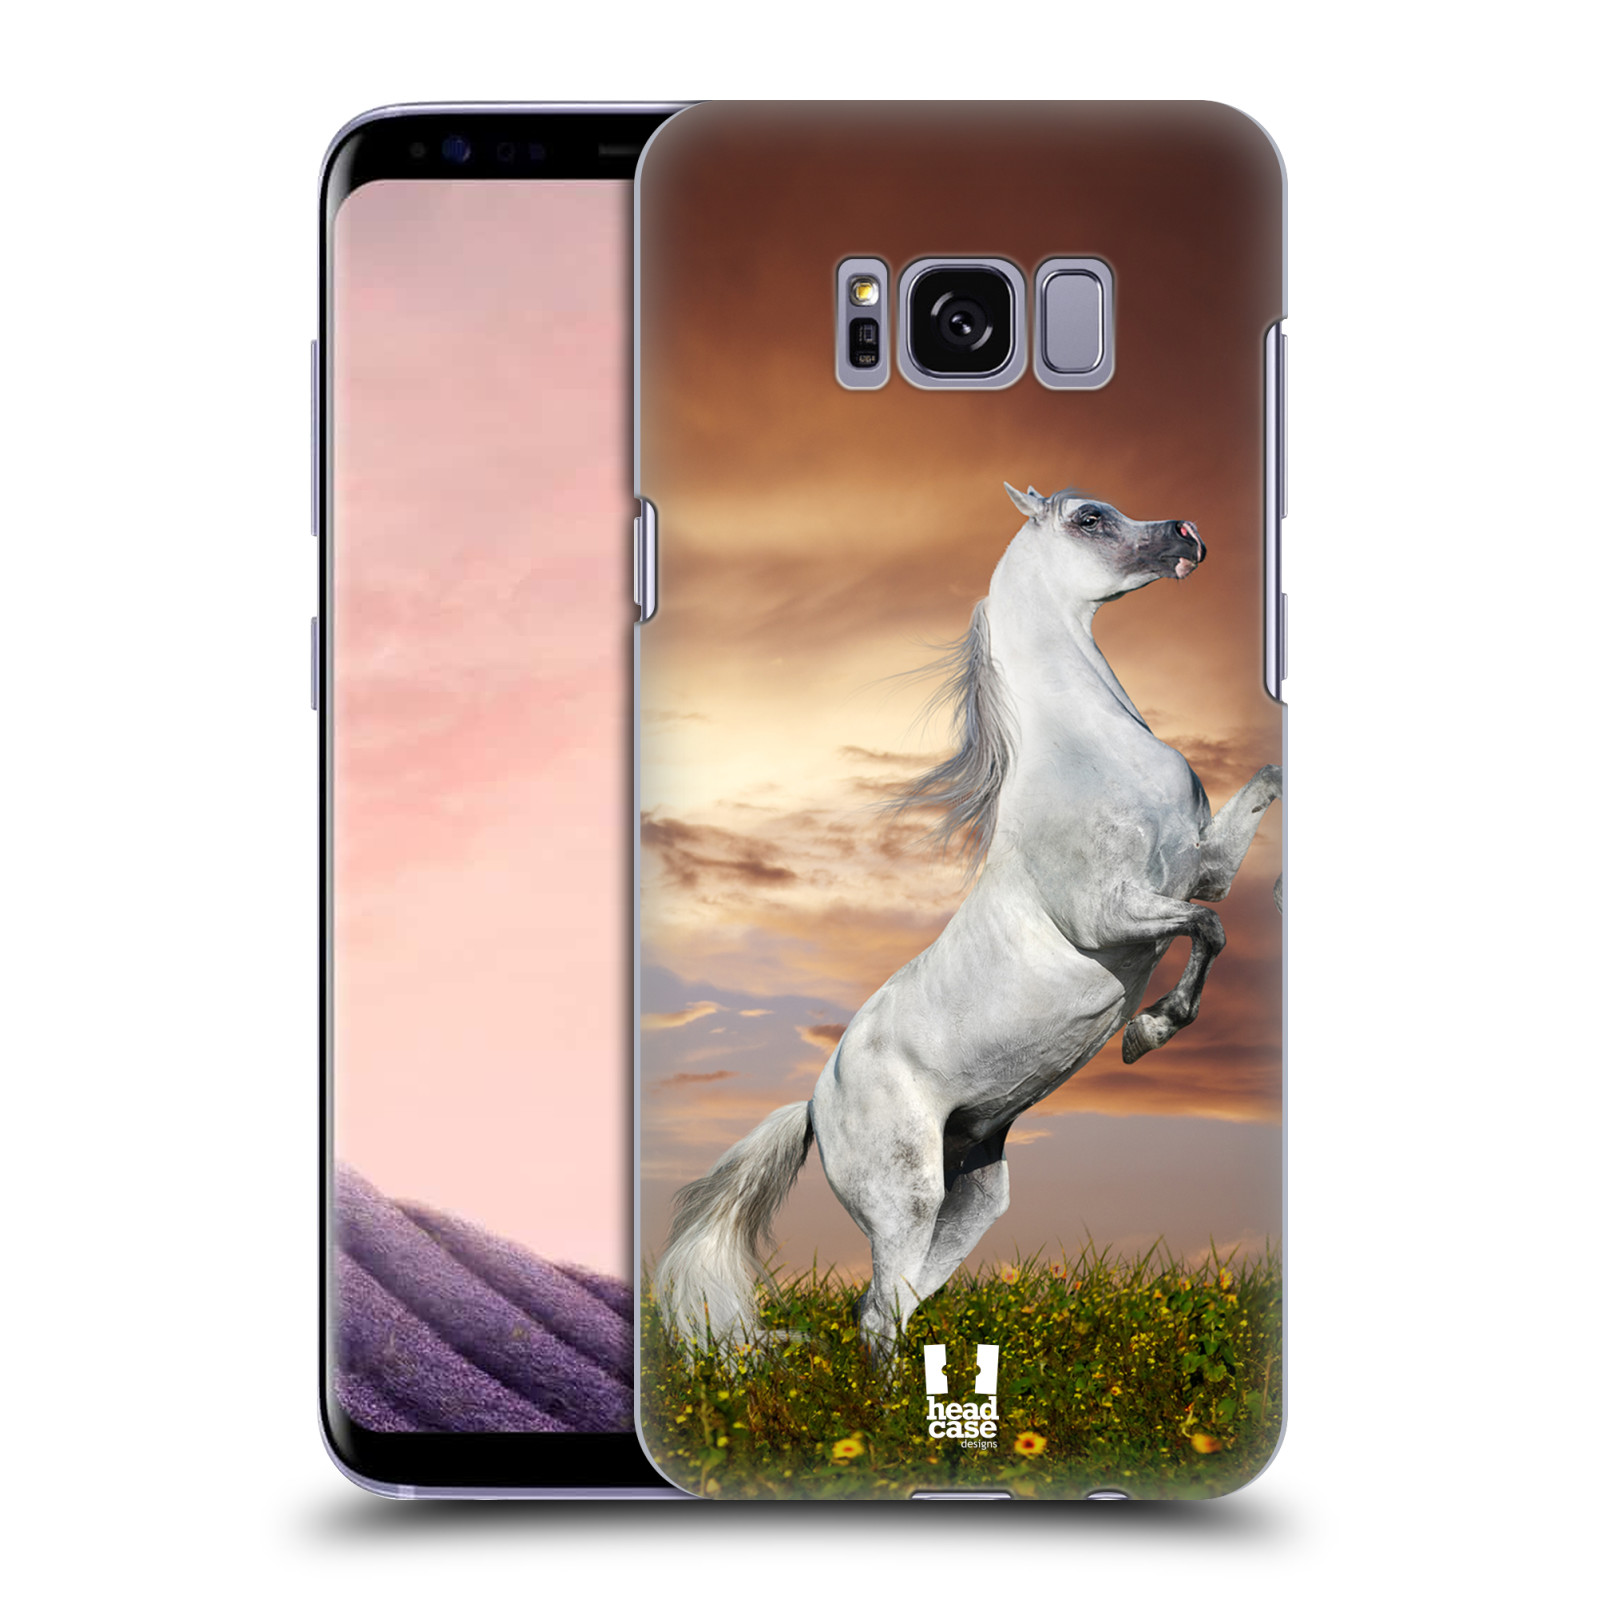 Zadní obal pro mobil Samsung Galaxy S8 - HEAD CASE - Svět zvířat divoký kůň